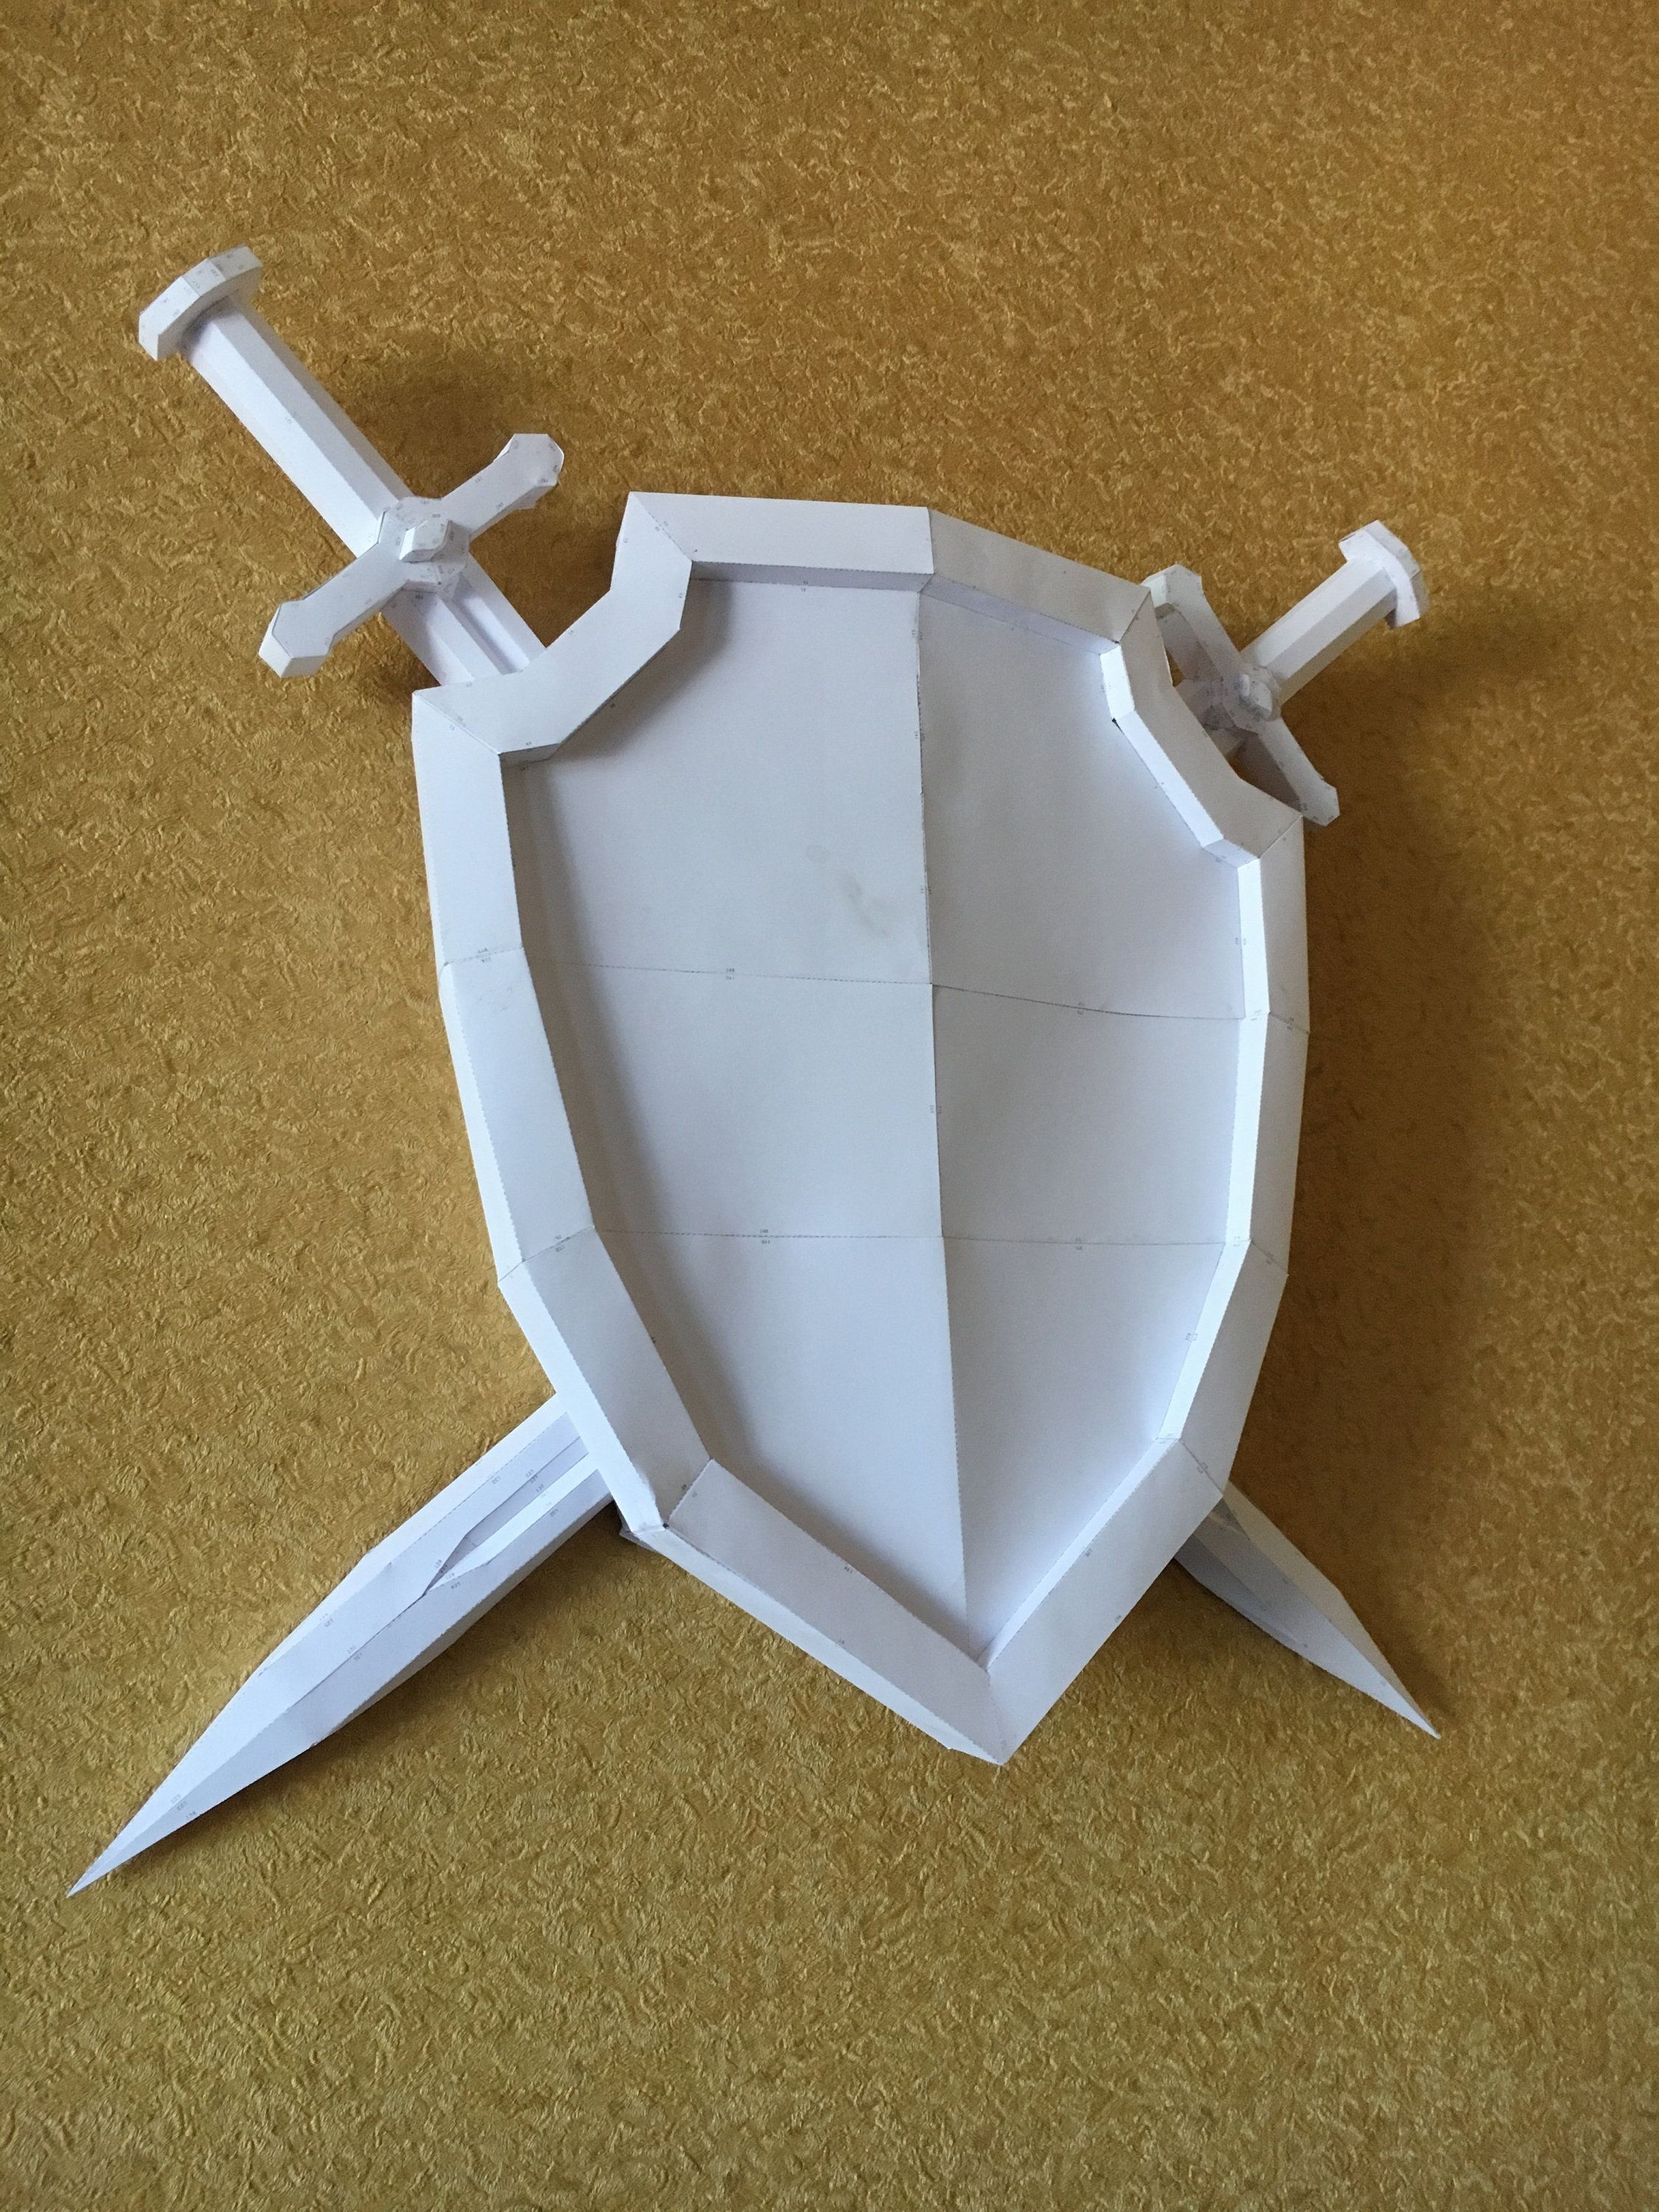 Human Papercraft Sword Shield Diy Papercraft Model ÐÑÐ¼Ð°Ð¶Ð½ÑÐµ Ð¸Ð·Ð´ÐµÐ Ð¸Ñ